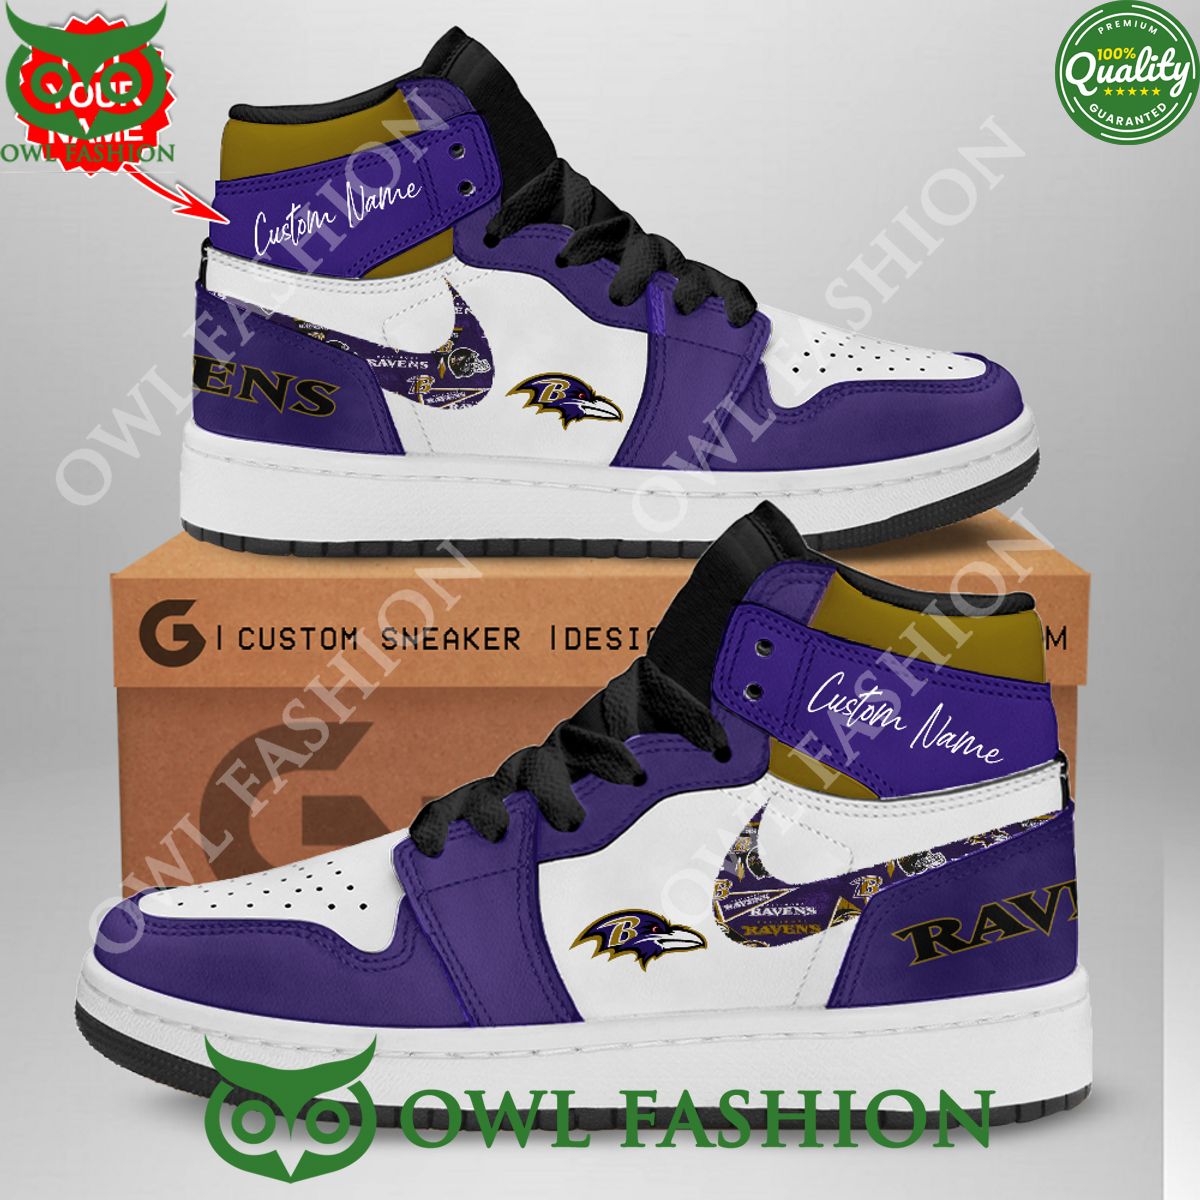 Baltimore Ravens NFL Air Jordan High Top Sneakers